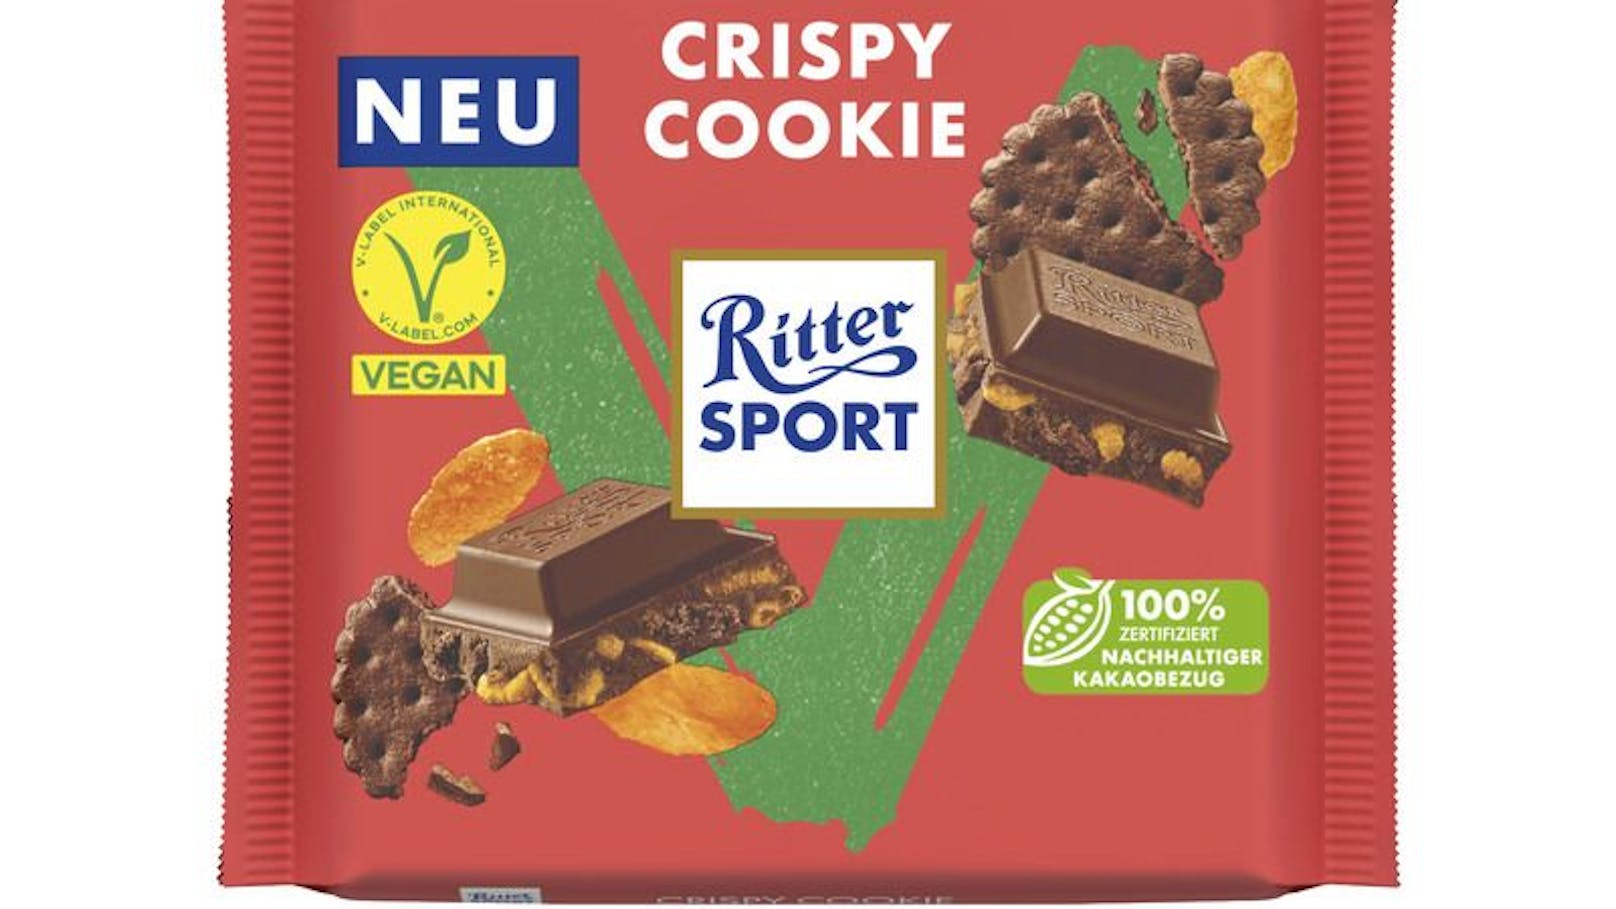 "Crispy Cookie": Die neue Kreation erinnere, so verspricht der Werbetext, geschmacklich an "Milchschokolade mit Crunch"